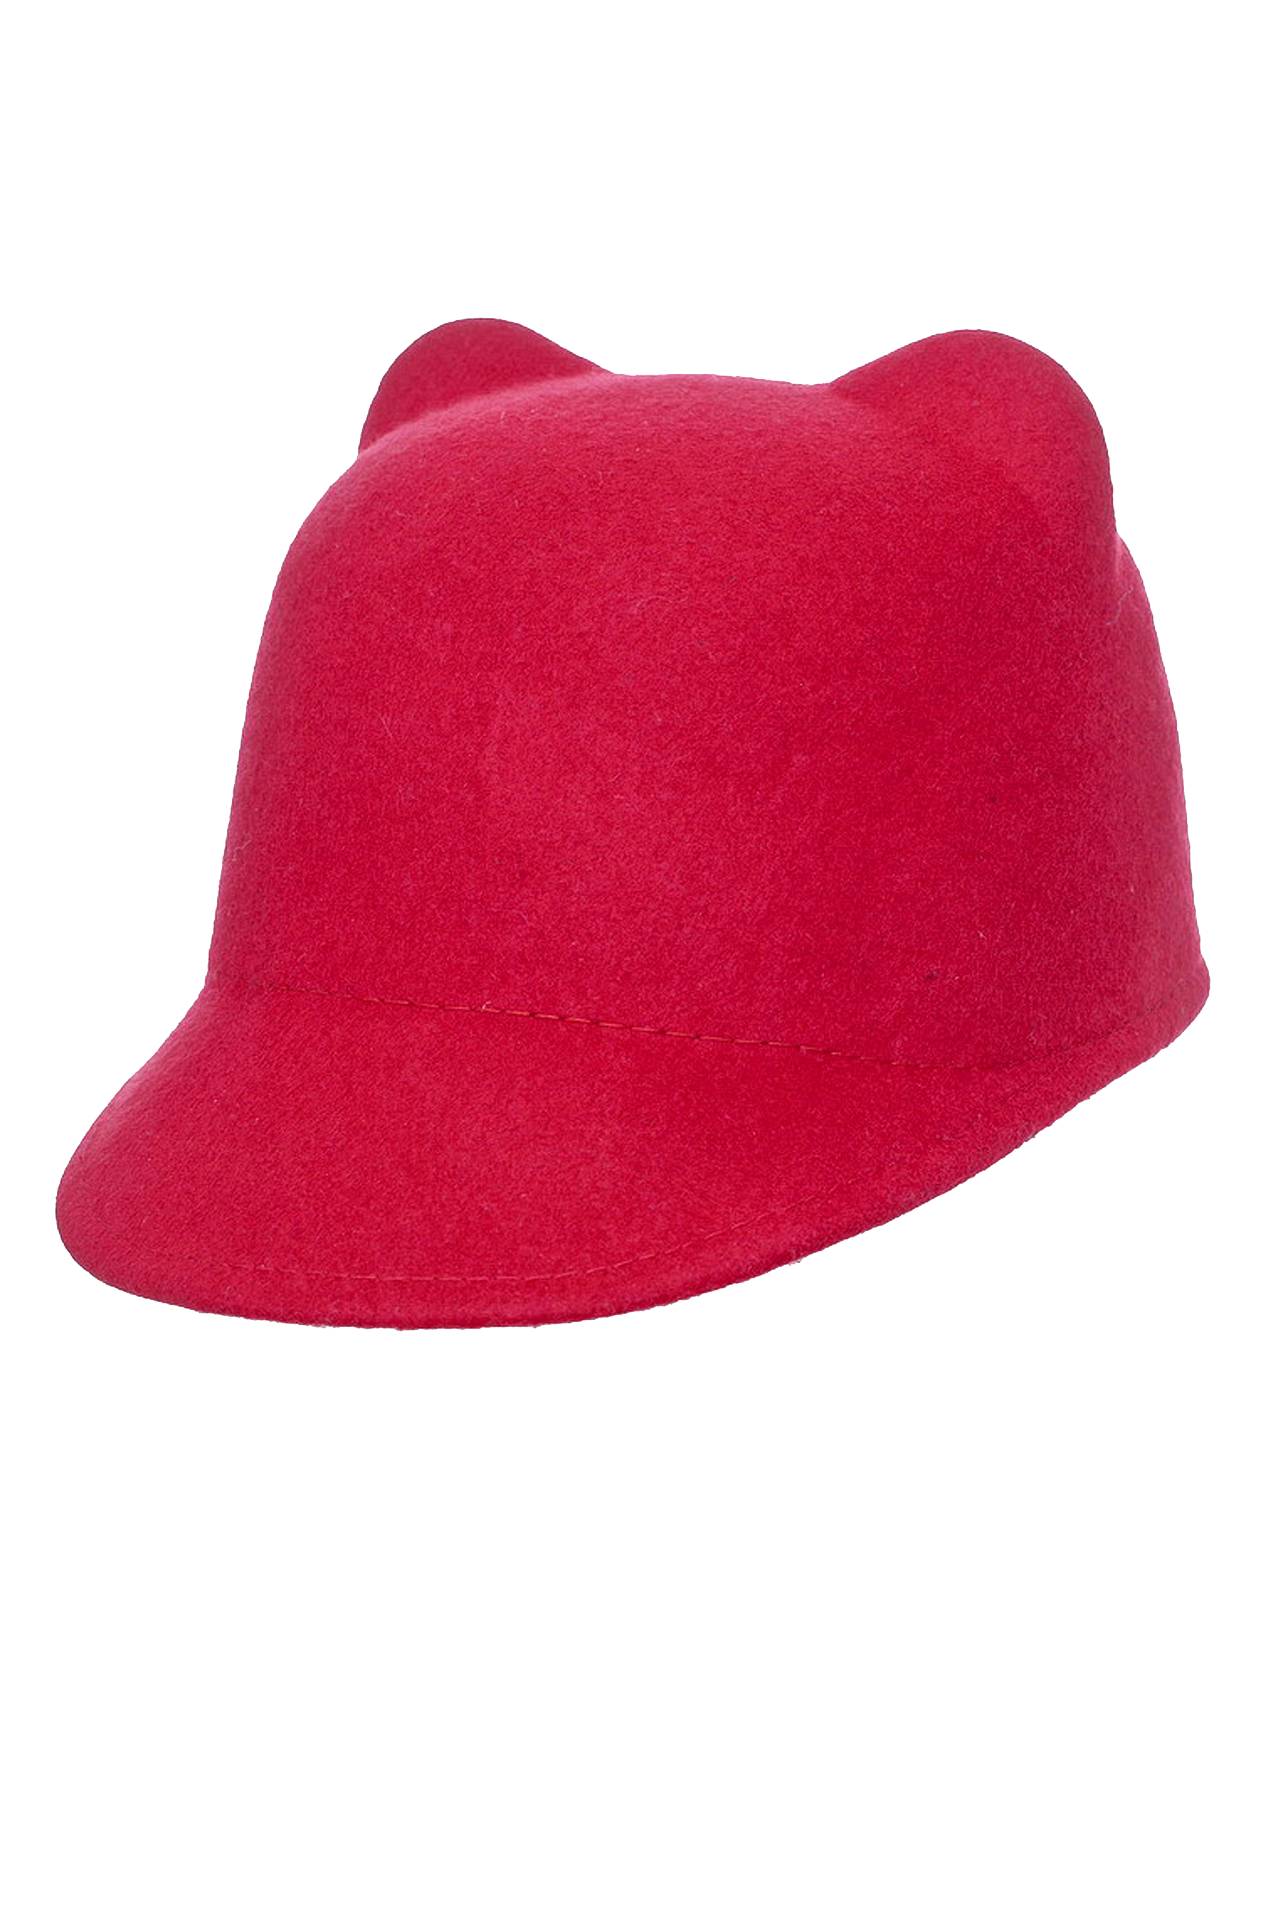 Аксессуары женская Шляпа LETICIA MILANO (KS1201/15.1). Купить за 4250 руб.